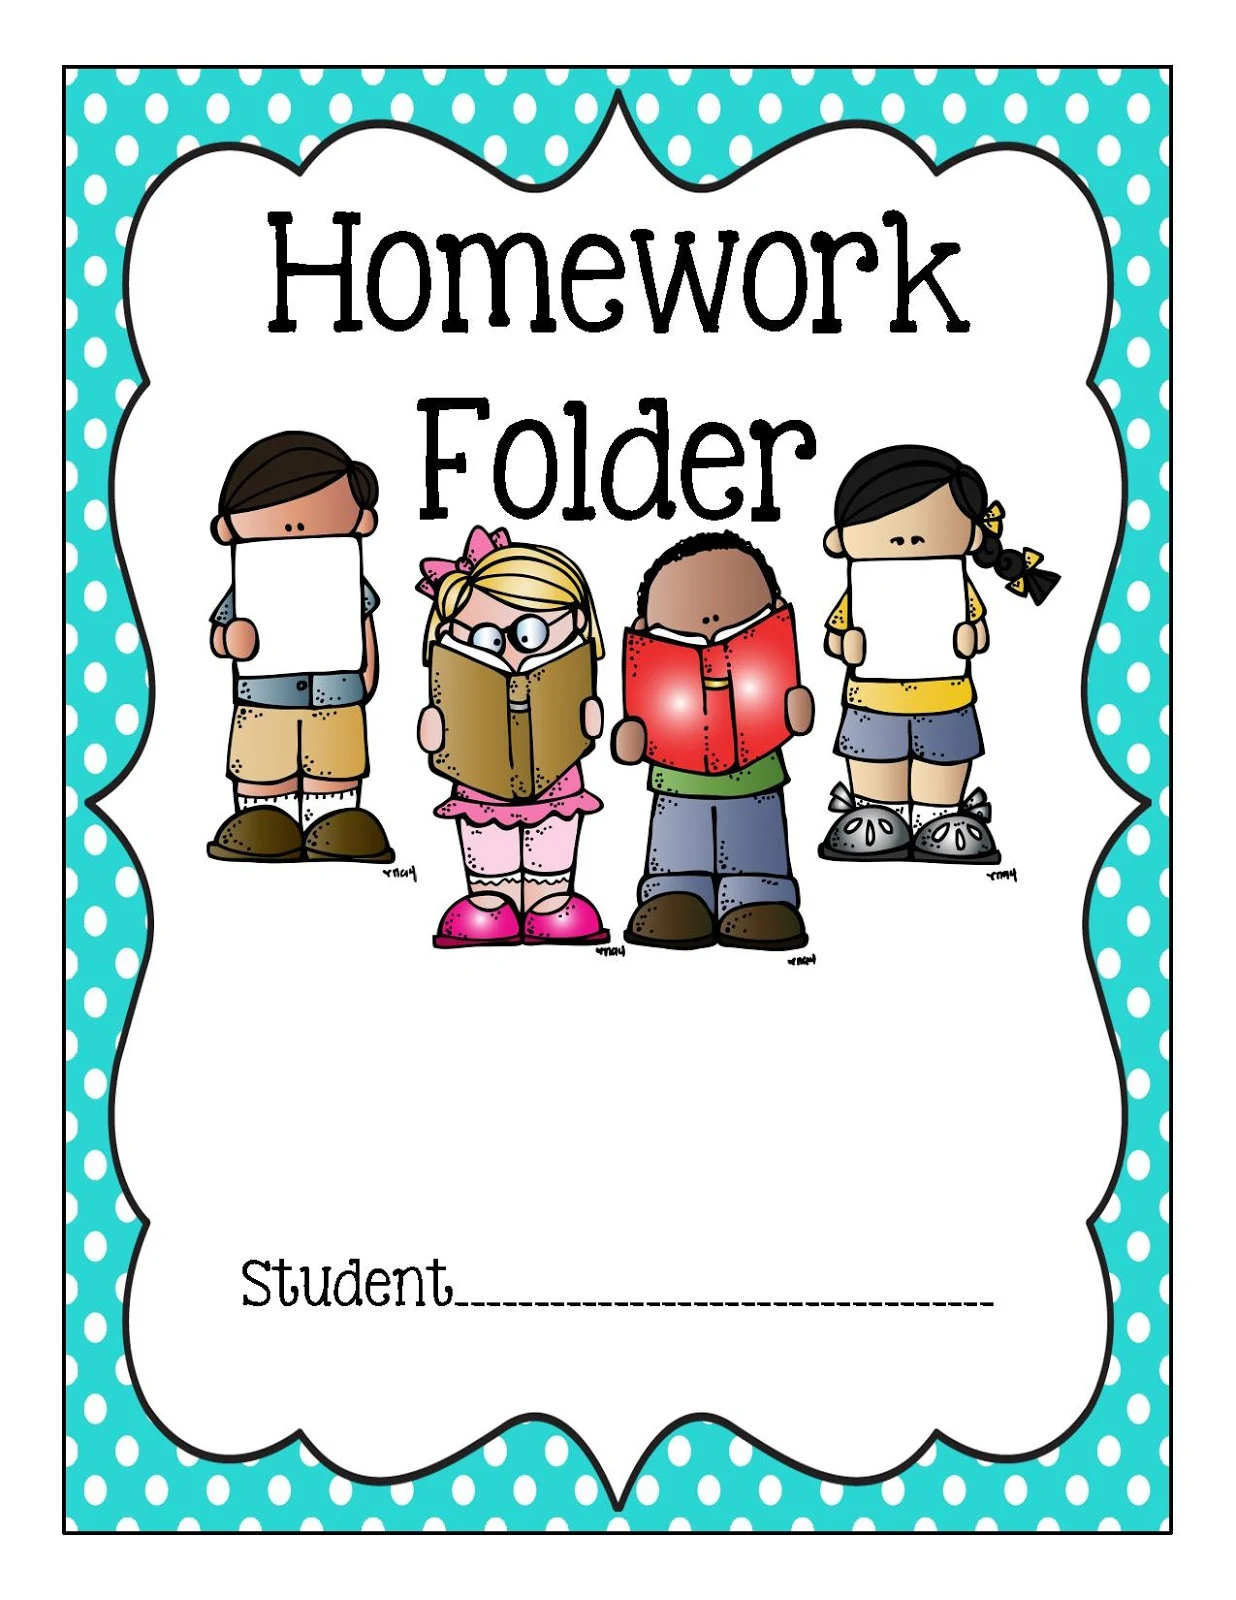 Homework folder cover sheet template first grade